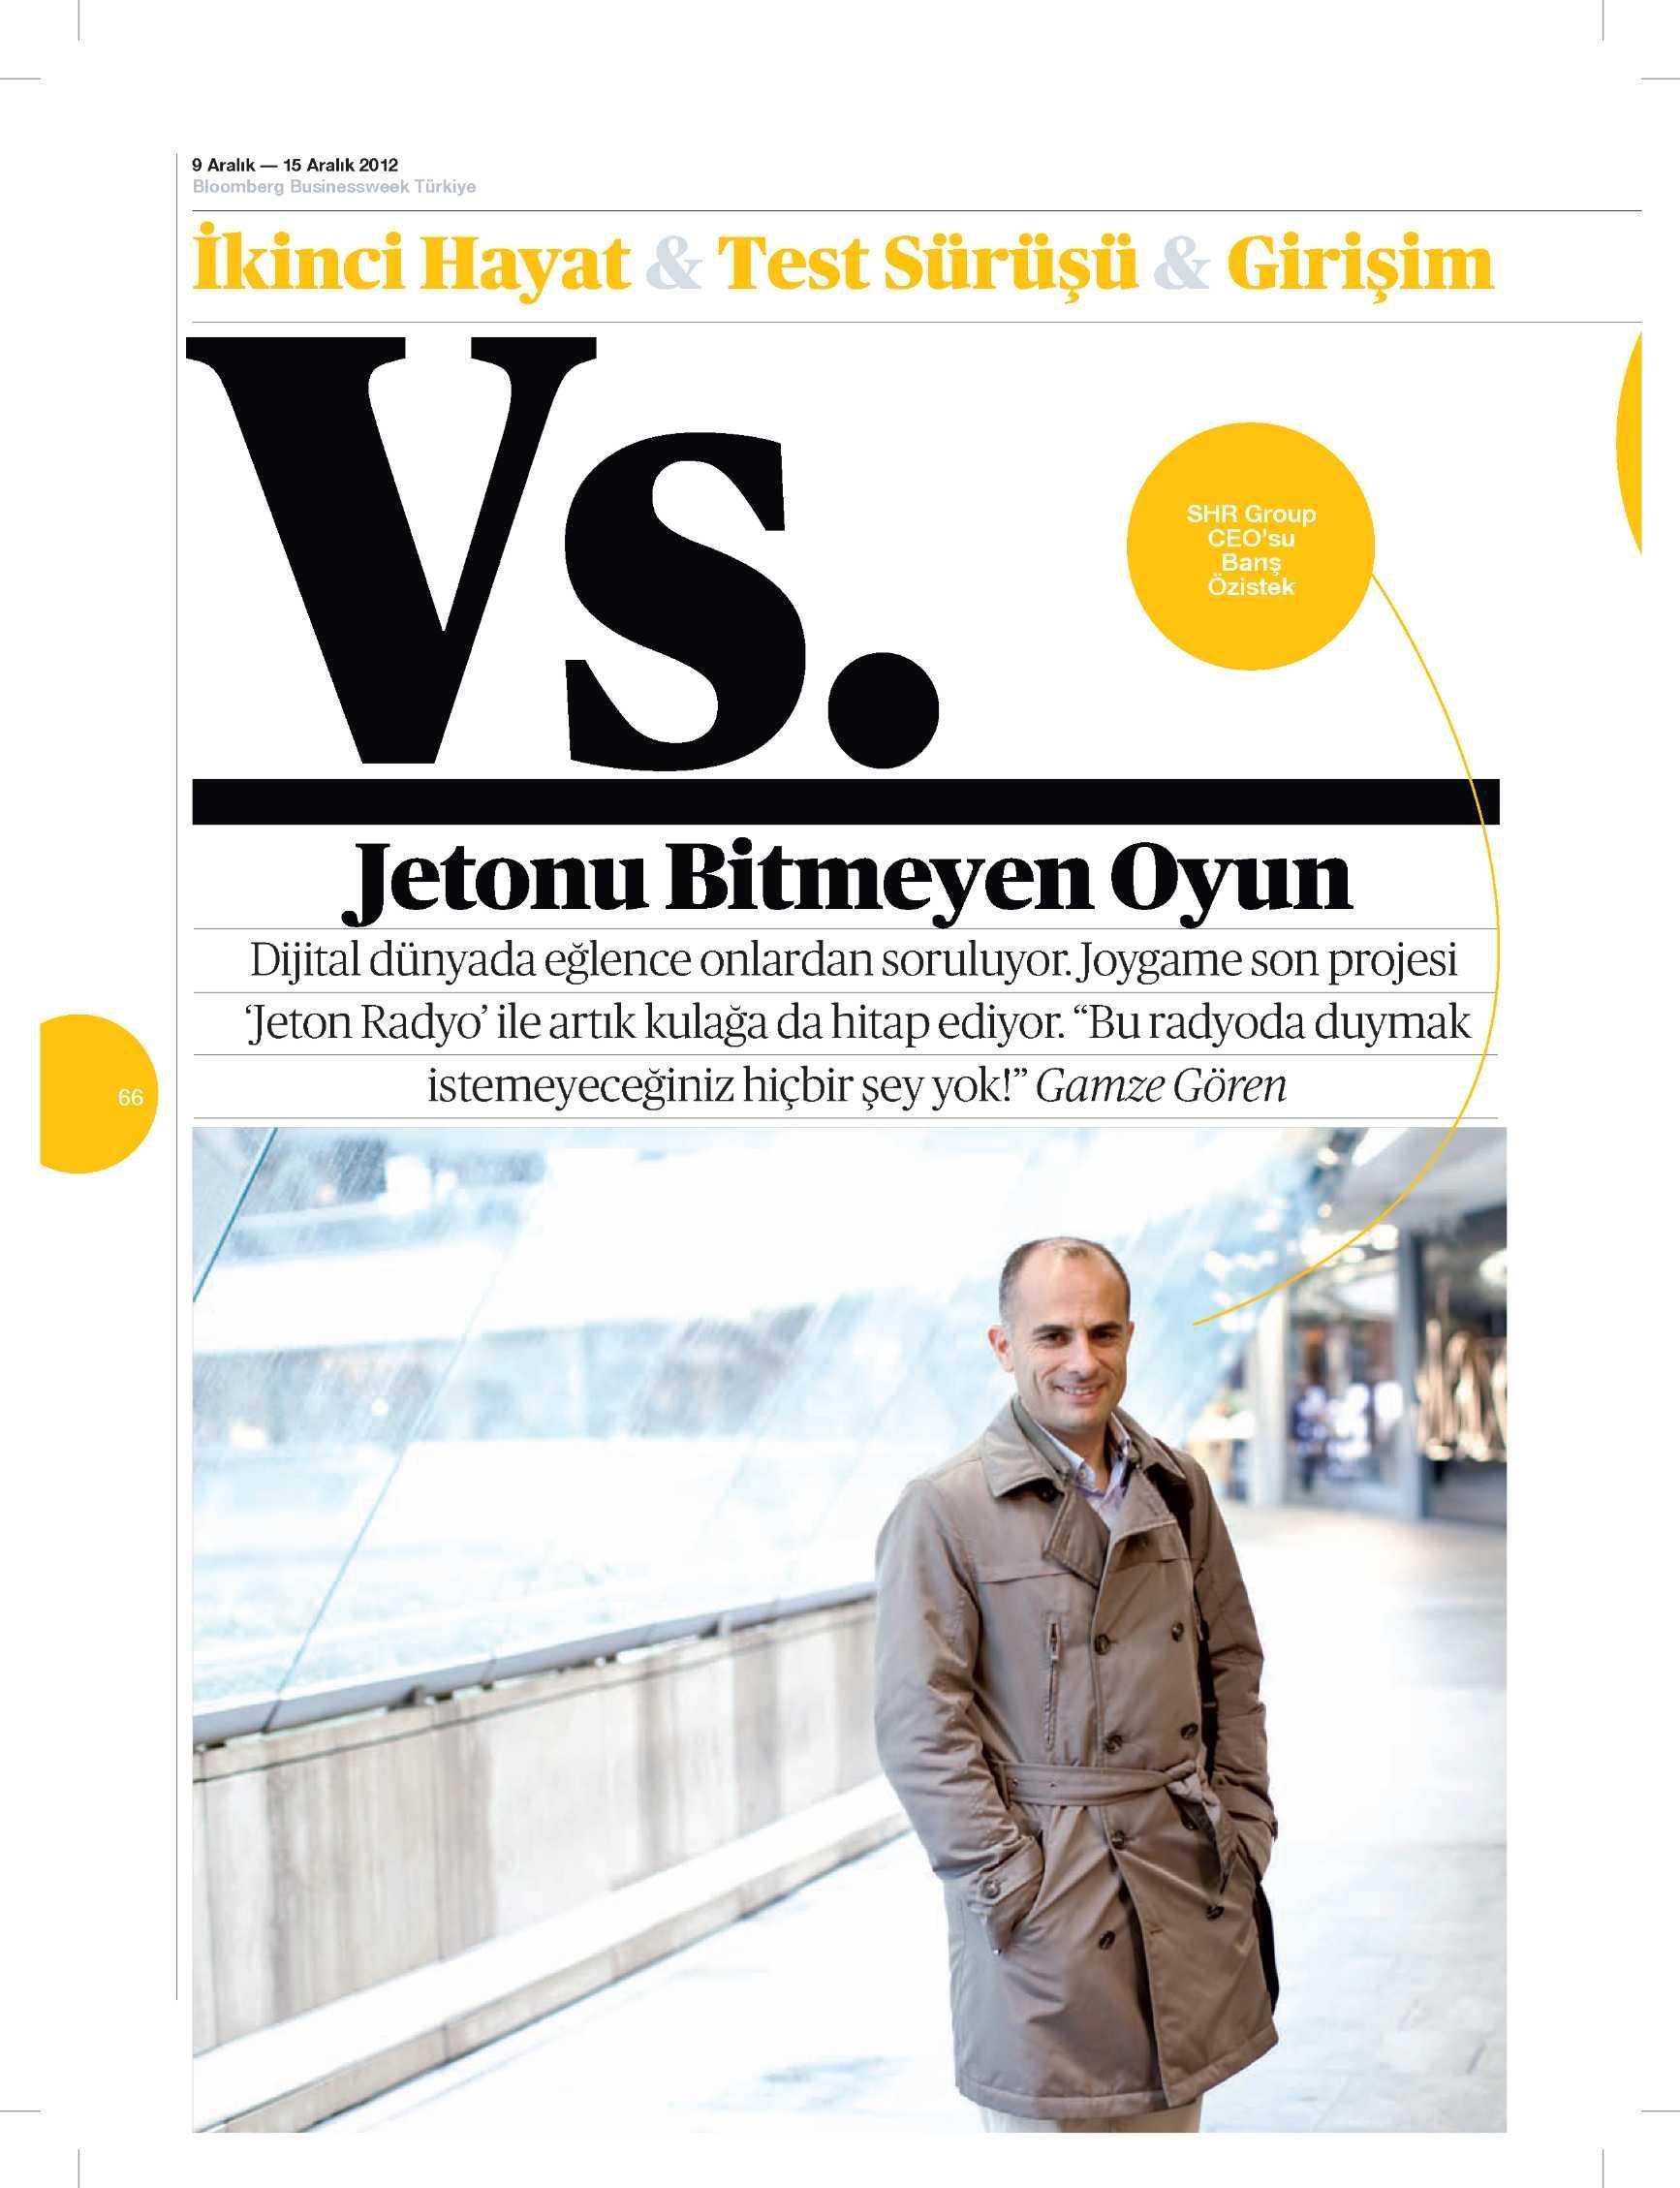 Netmarble-Turkey-Bloomberg-Businessweek-Turkiye-Sayfa-66-9-Aralik-2012-1